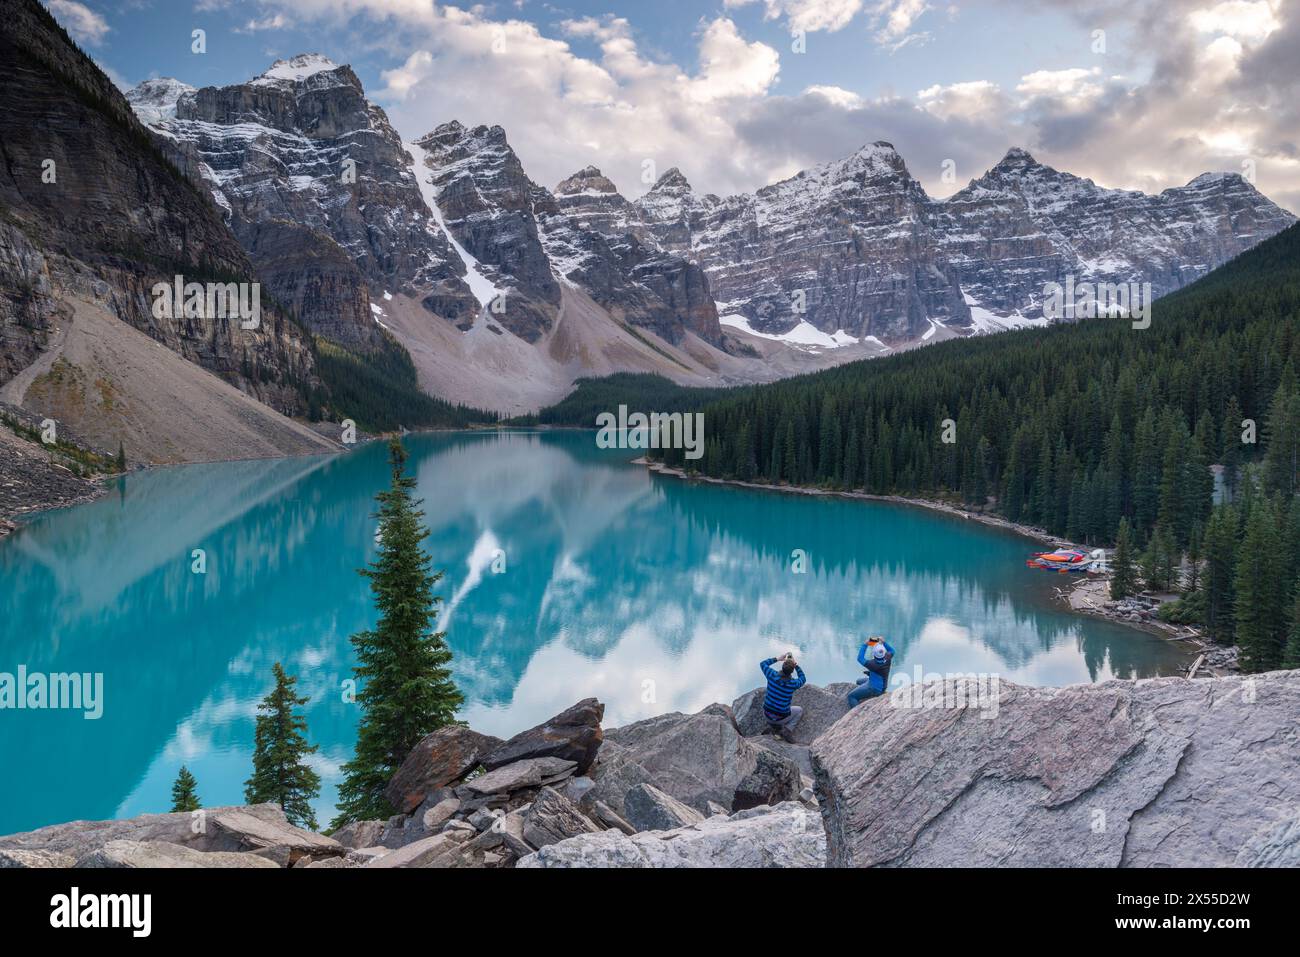 Turisti che fotografano il lago Moraine dal Rockpile, Banff National Park, Alberta, Canada. Foto Stock